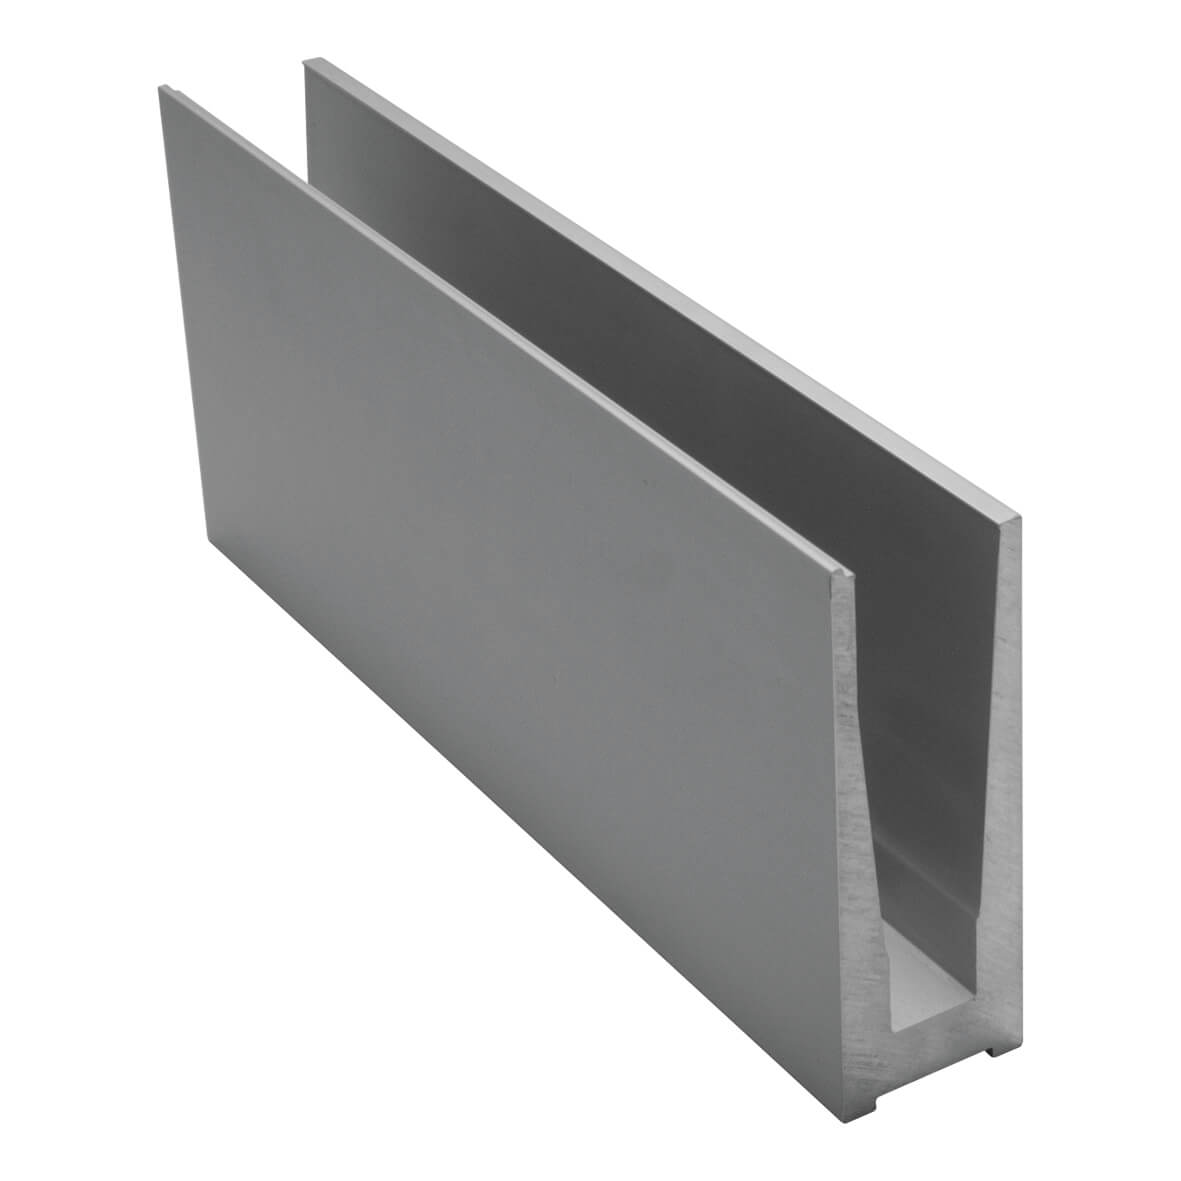 Profilo ringhiera SIMPLE TOP-4000mm lunghezza vetro profilo ringhiera in alluminio